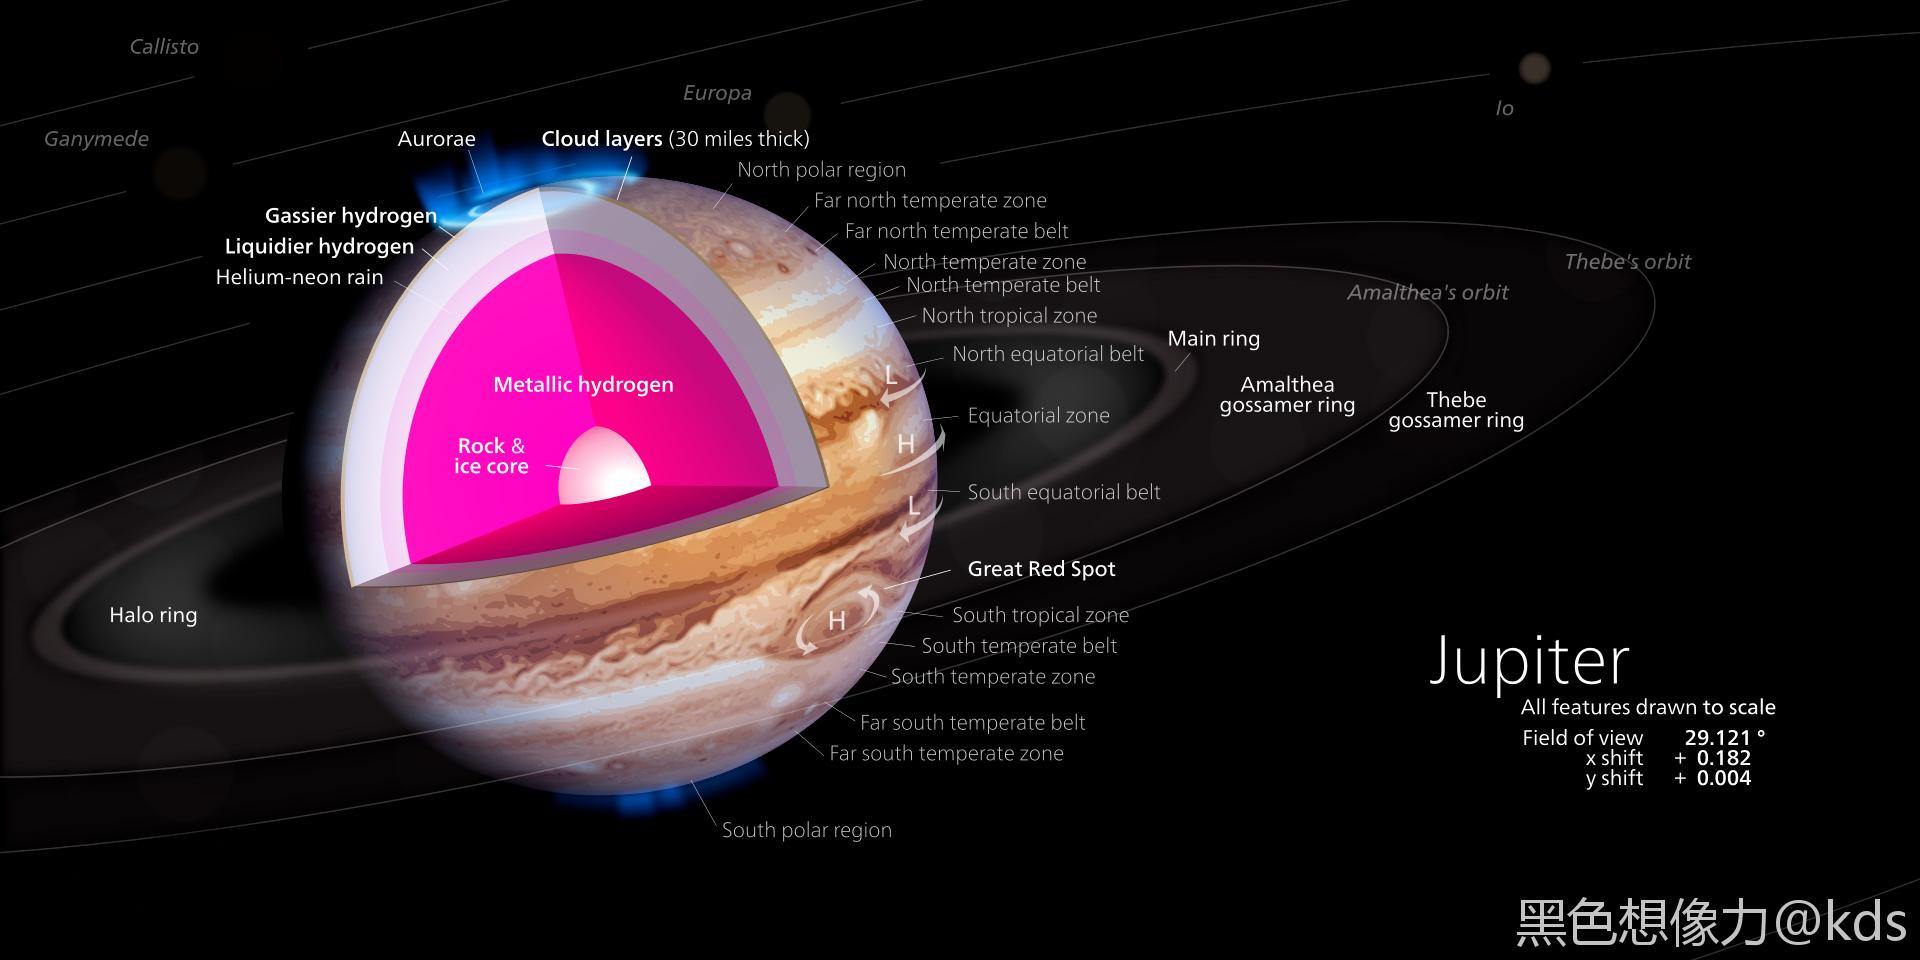 如果地球真的撞向木星,那么应该是嵌在木星里